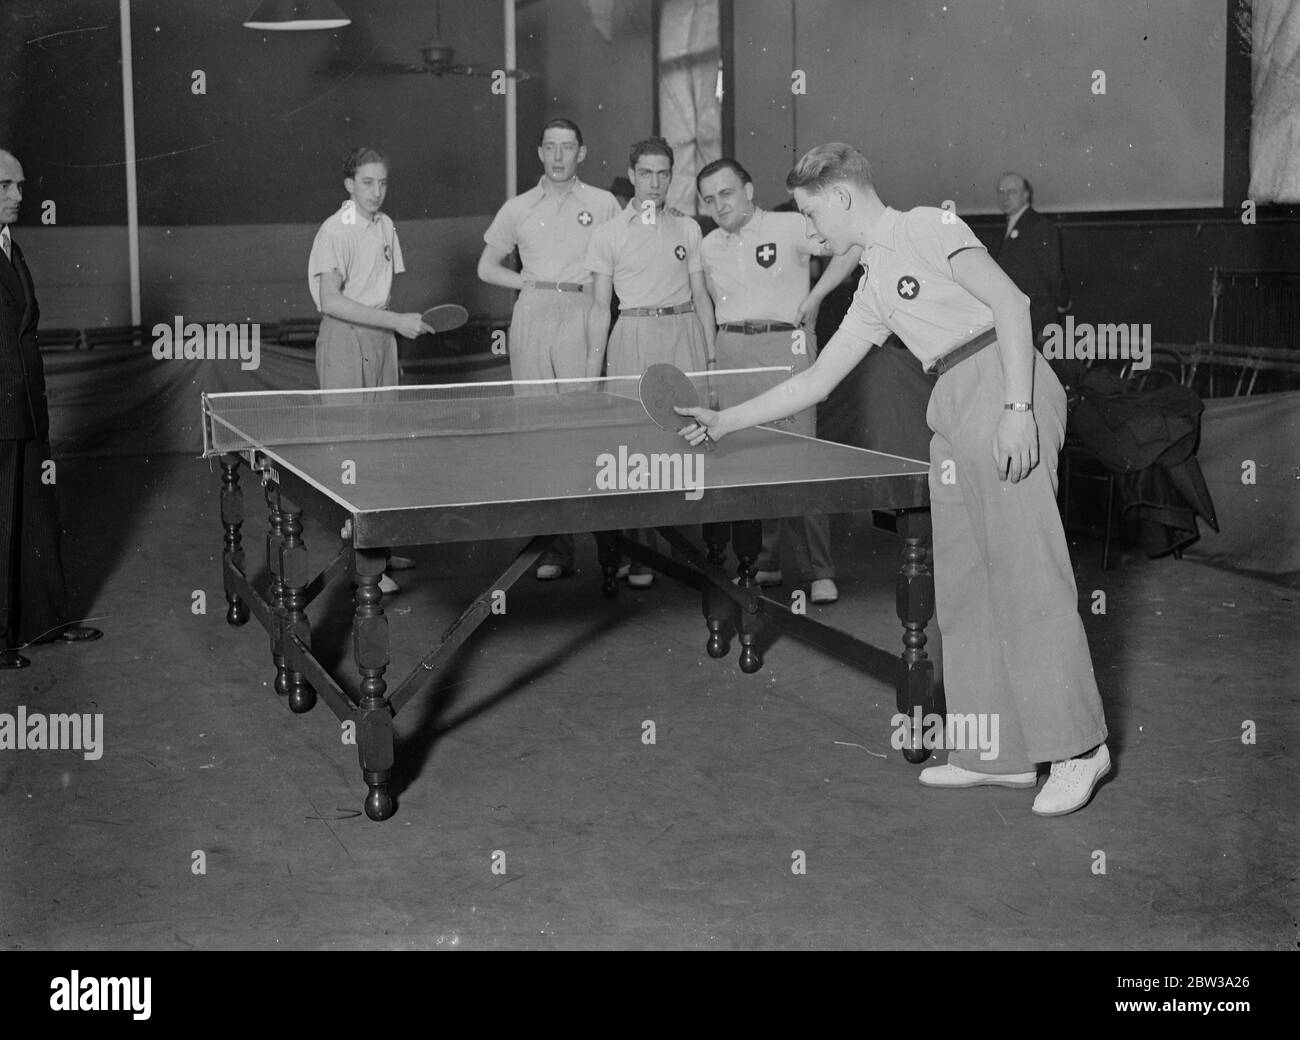 Die Tischtennis-Weltmeisterschaften wurden am Imperial Institute, Kensington, eröffnet. Foto zeigt, Mitglieder des Schweizer Teams erhalten Abschlusscoaching von ihrem Manager, Herrn P Barbier, vor dem Eröffnungsspiel. Februar 1935 Stockfoto